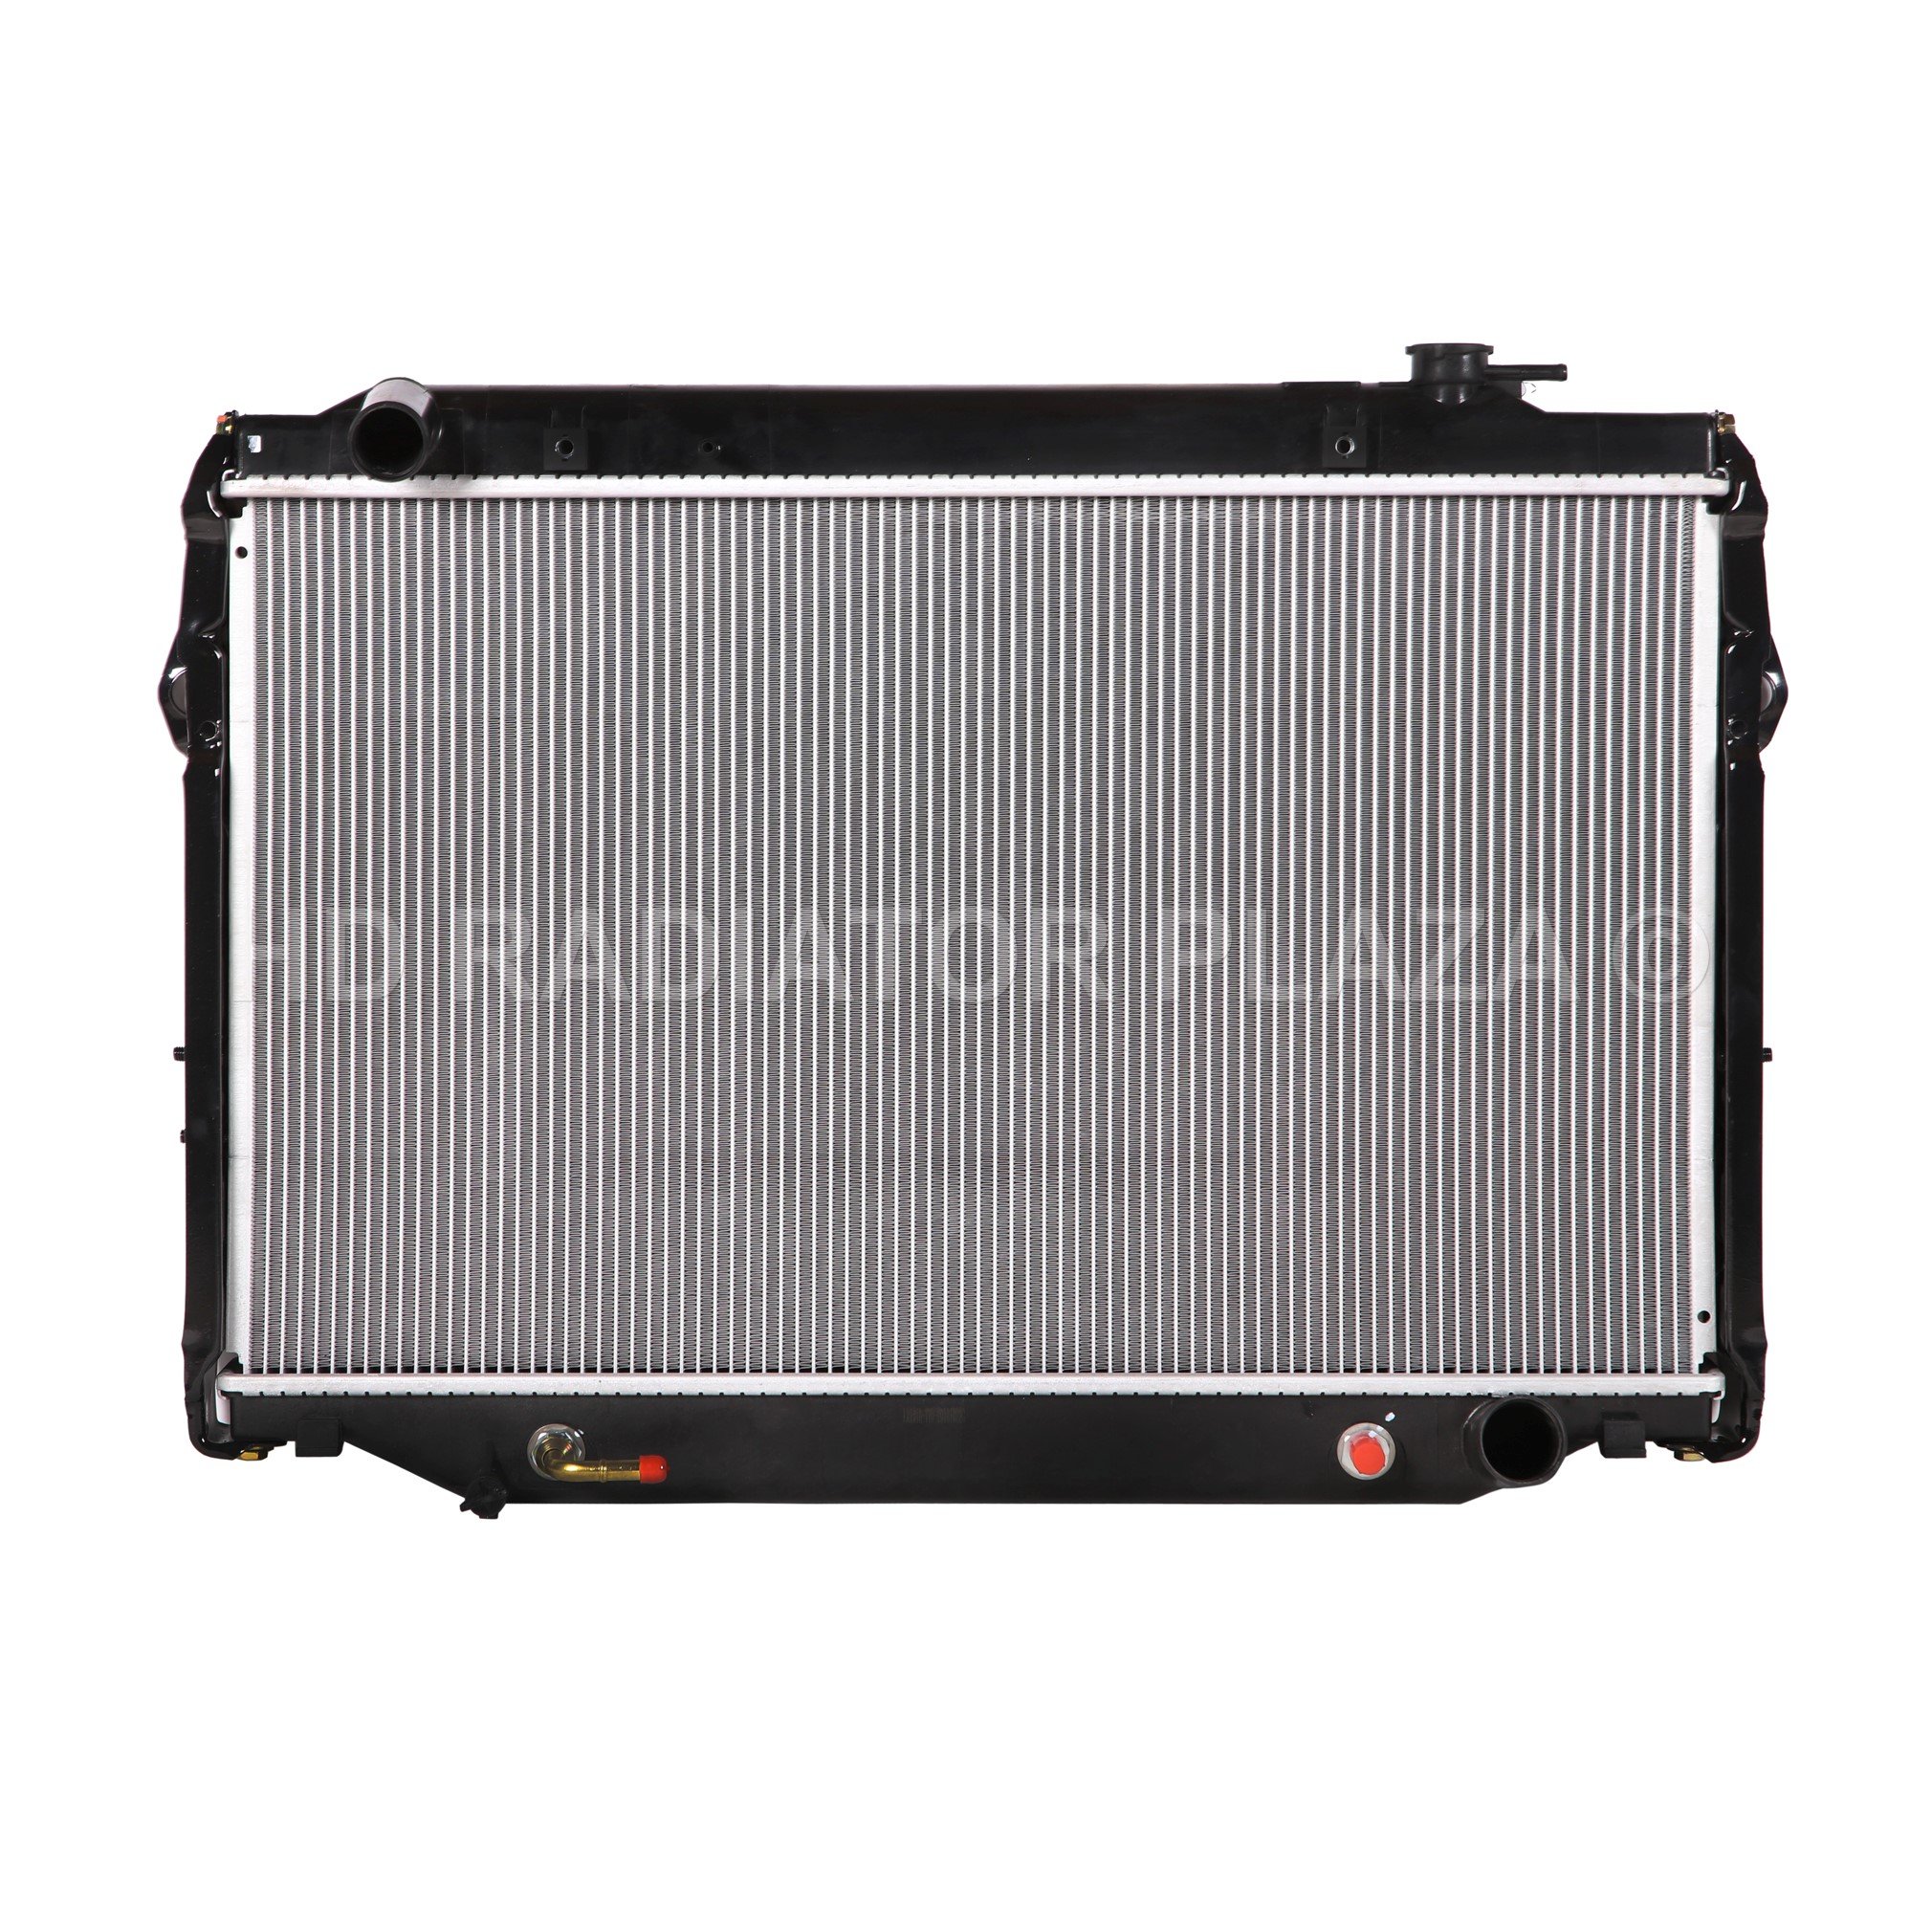 Radiator for 95-97 4.5 LANDCRUISER